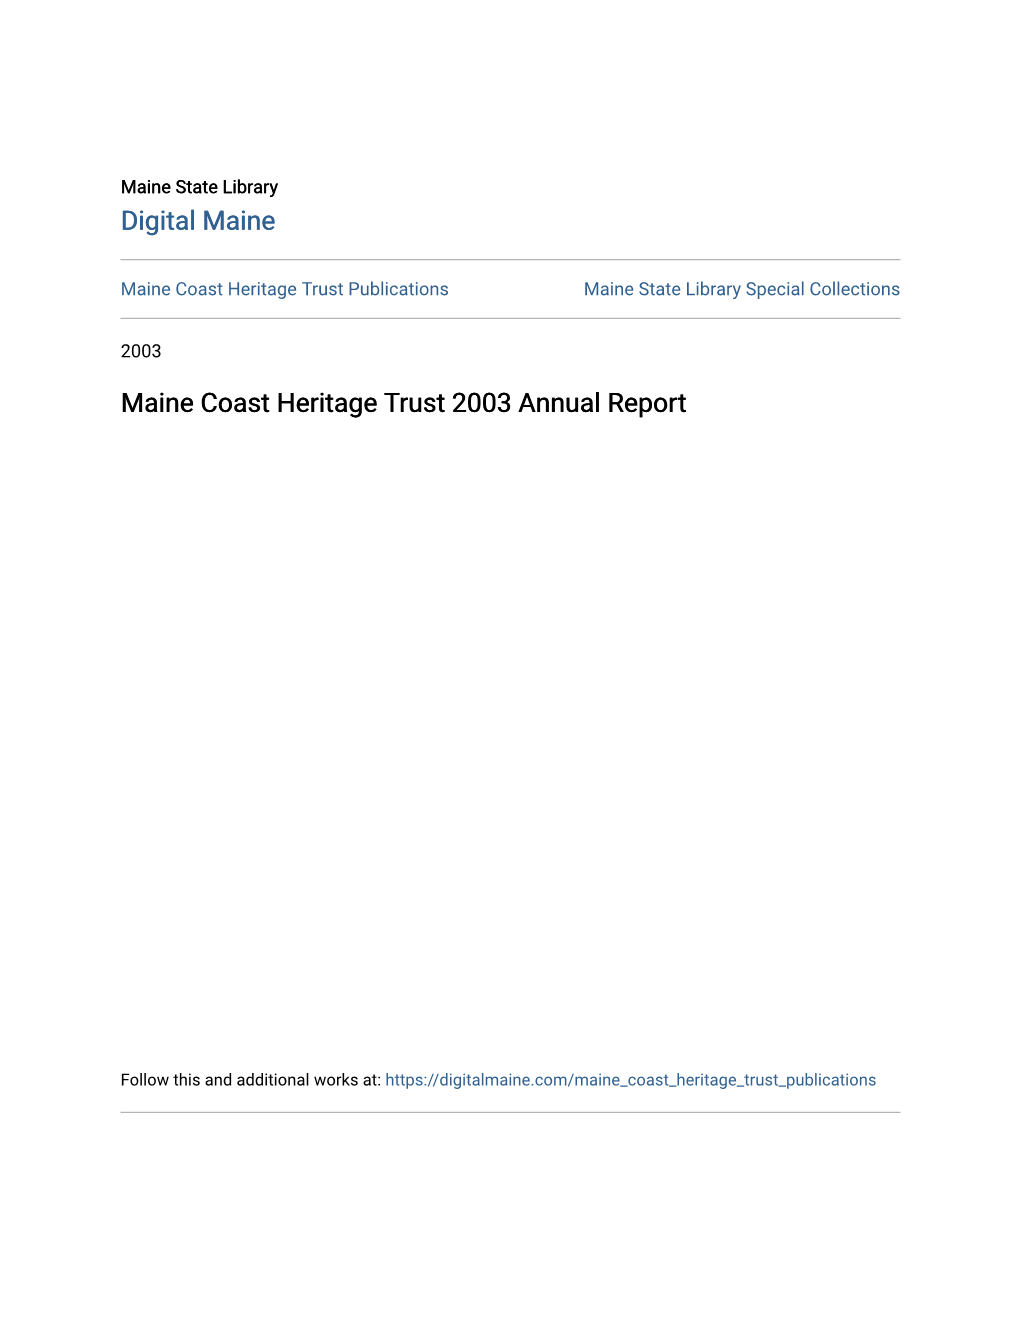 Maine Coast Heritage Trust 2003 Annual Report